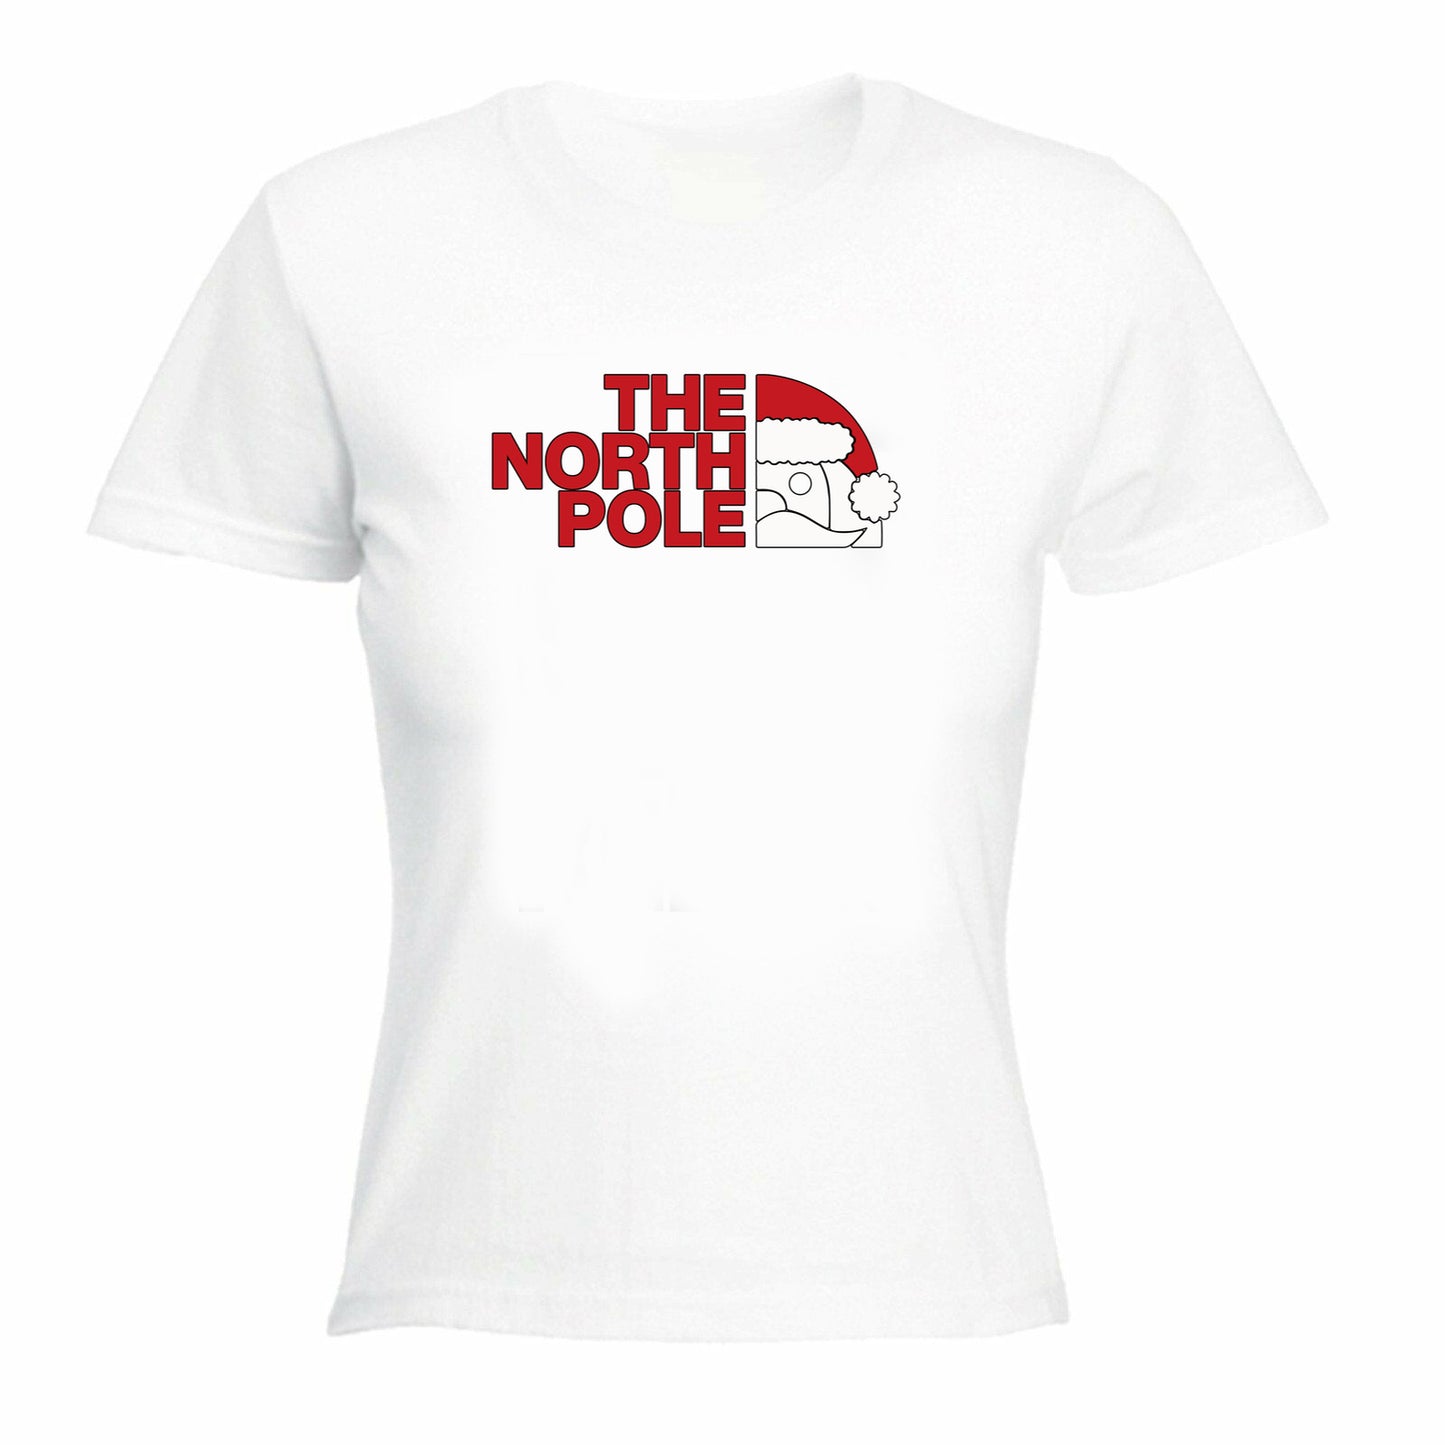 The North Pole Christmas Xmas Santa - Funny Womens T-Shirt Tshirt